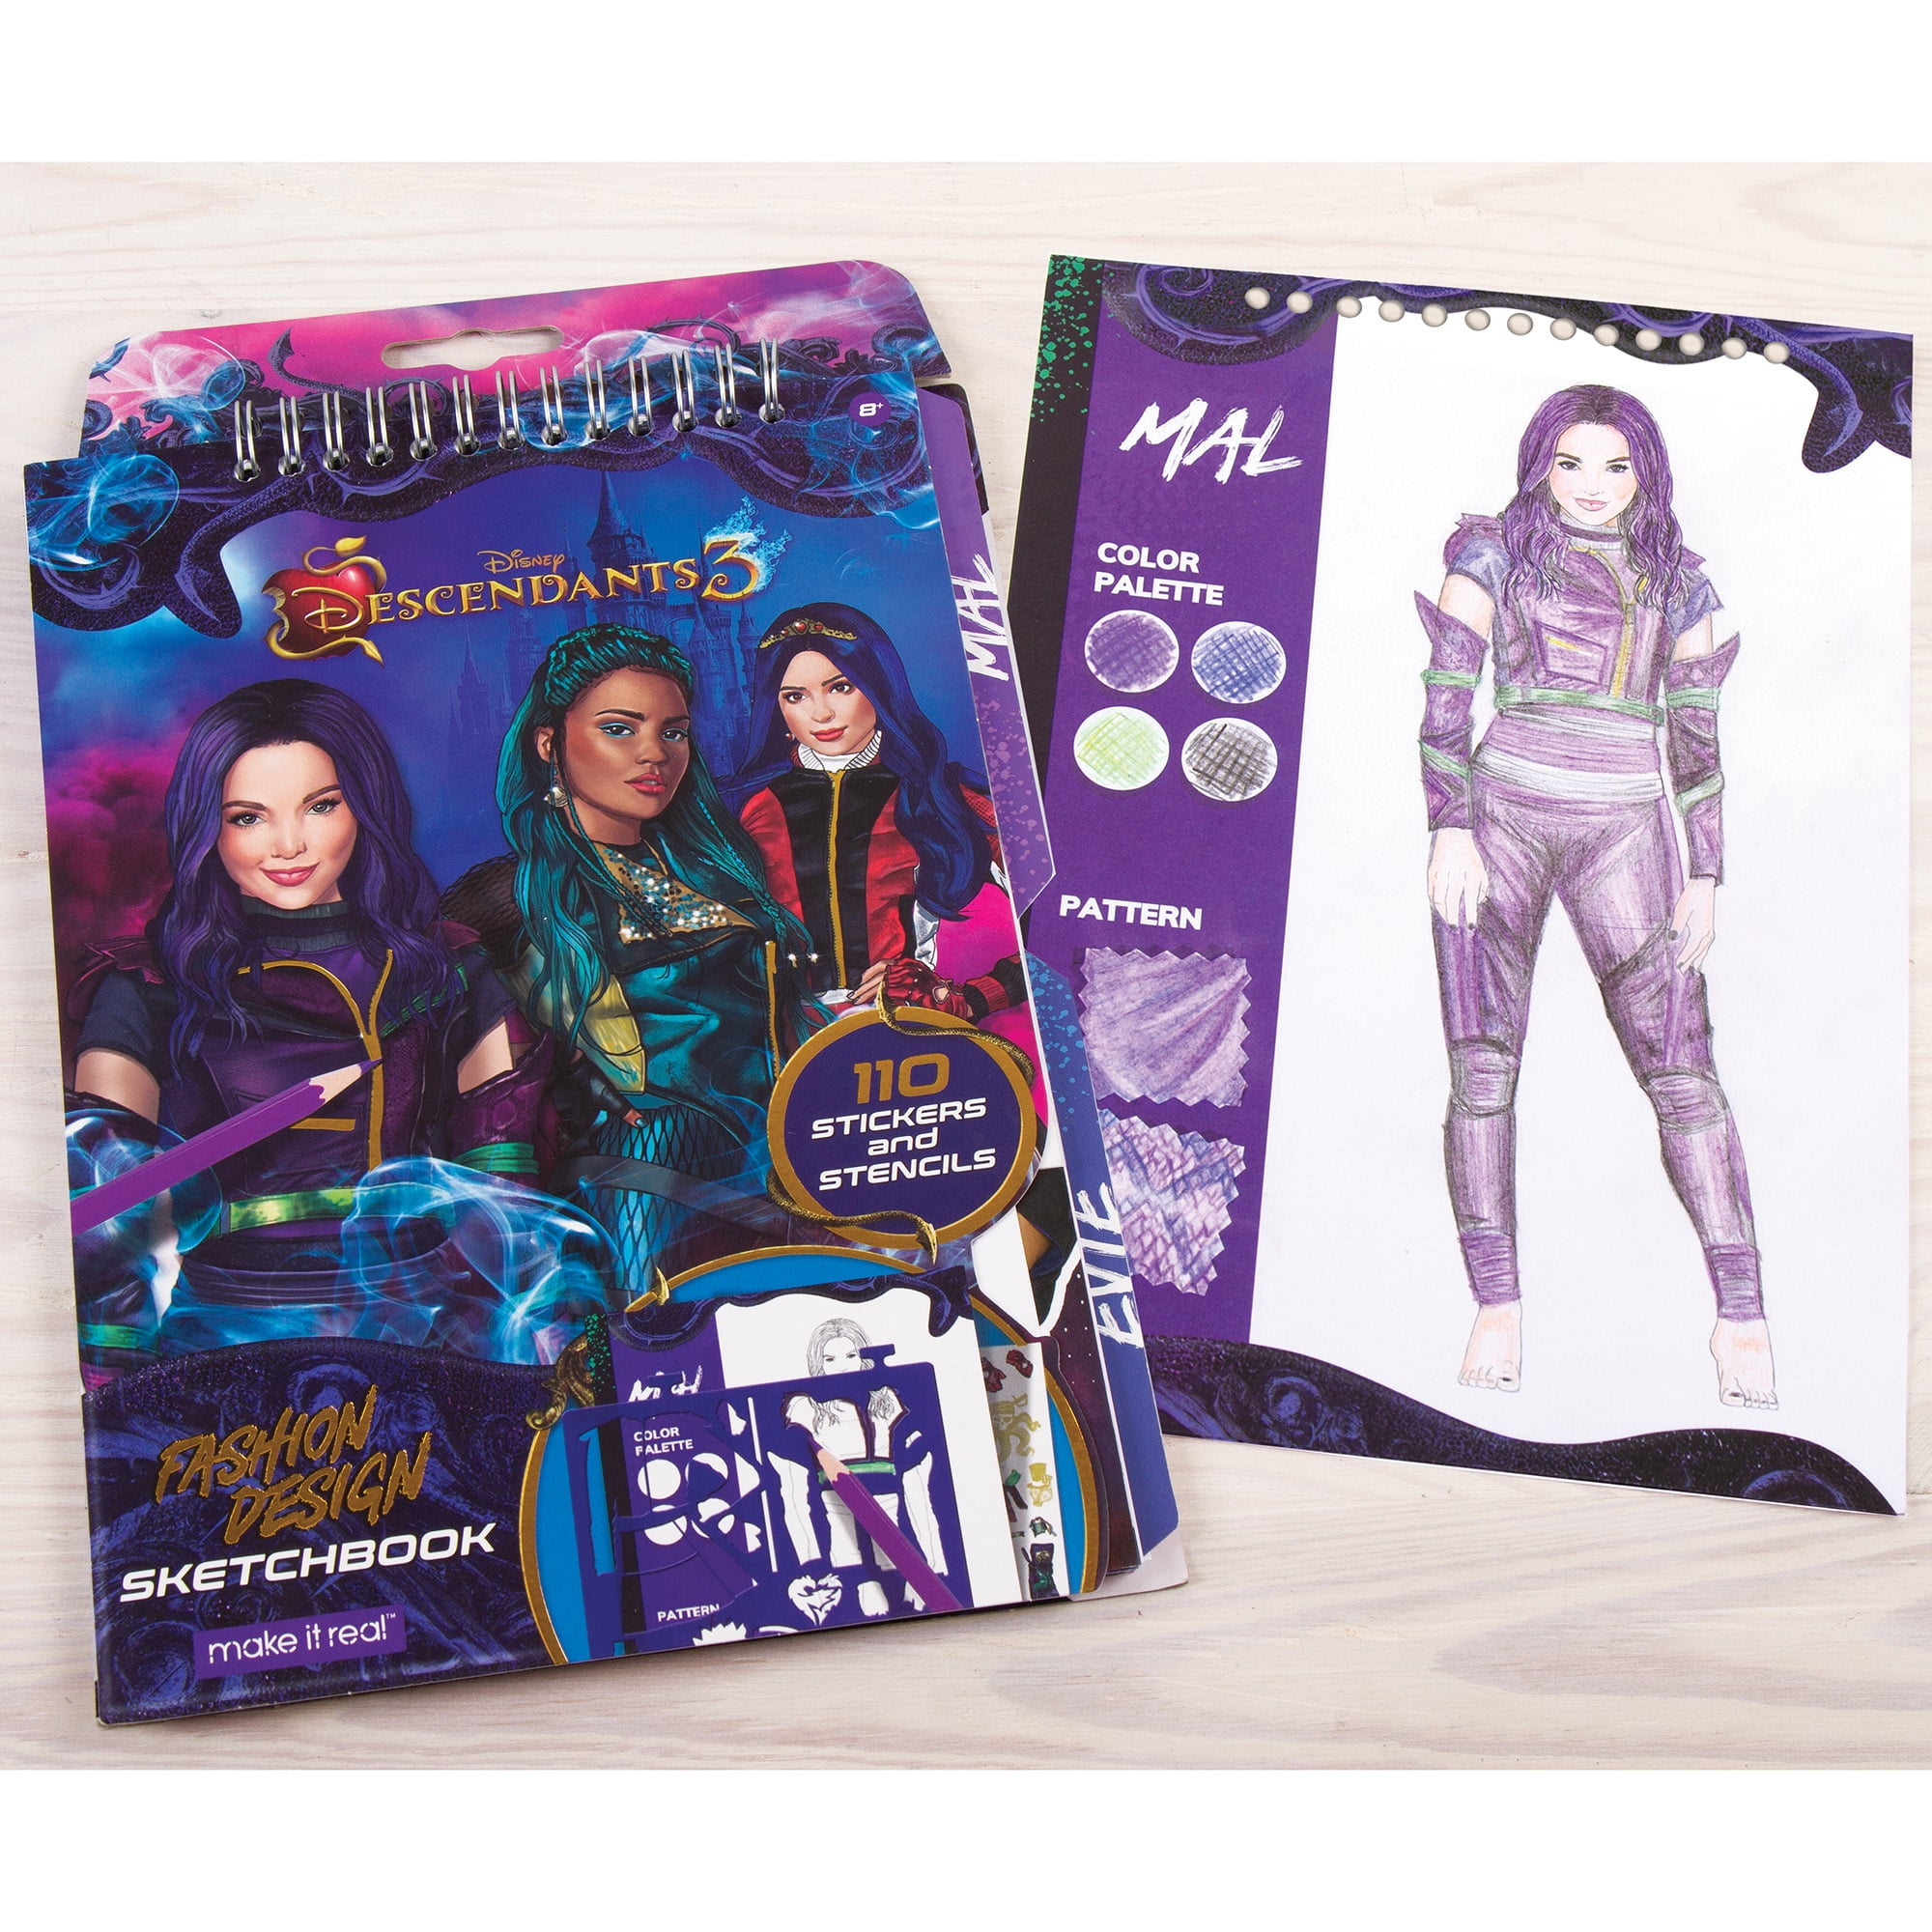 Descendants Fashion Pack for Kids Bundle - Descendants Doll Fashion Designer Kit for Girls with Disney Villains Tattoos, More | DIY Arts and Crafts